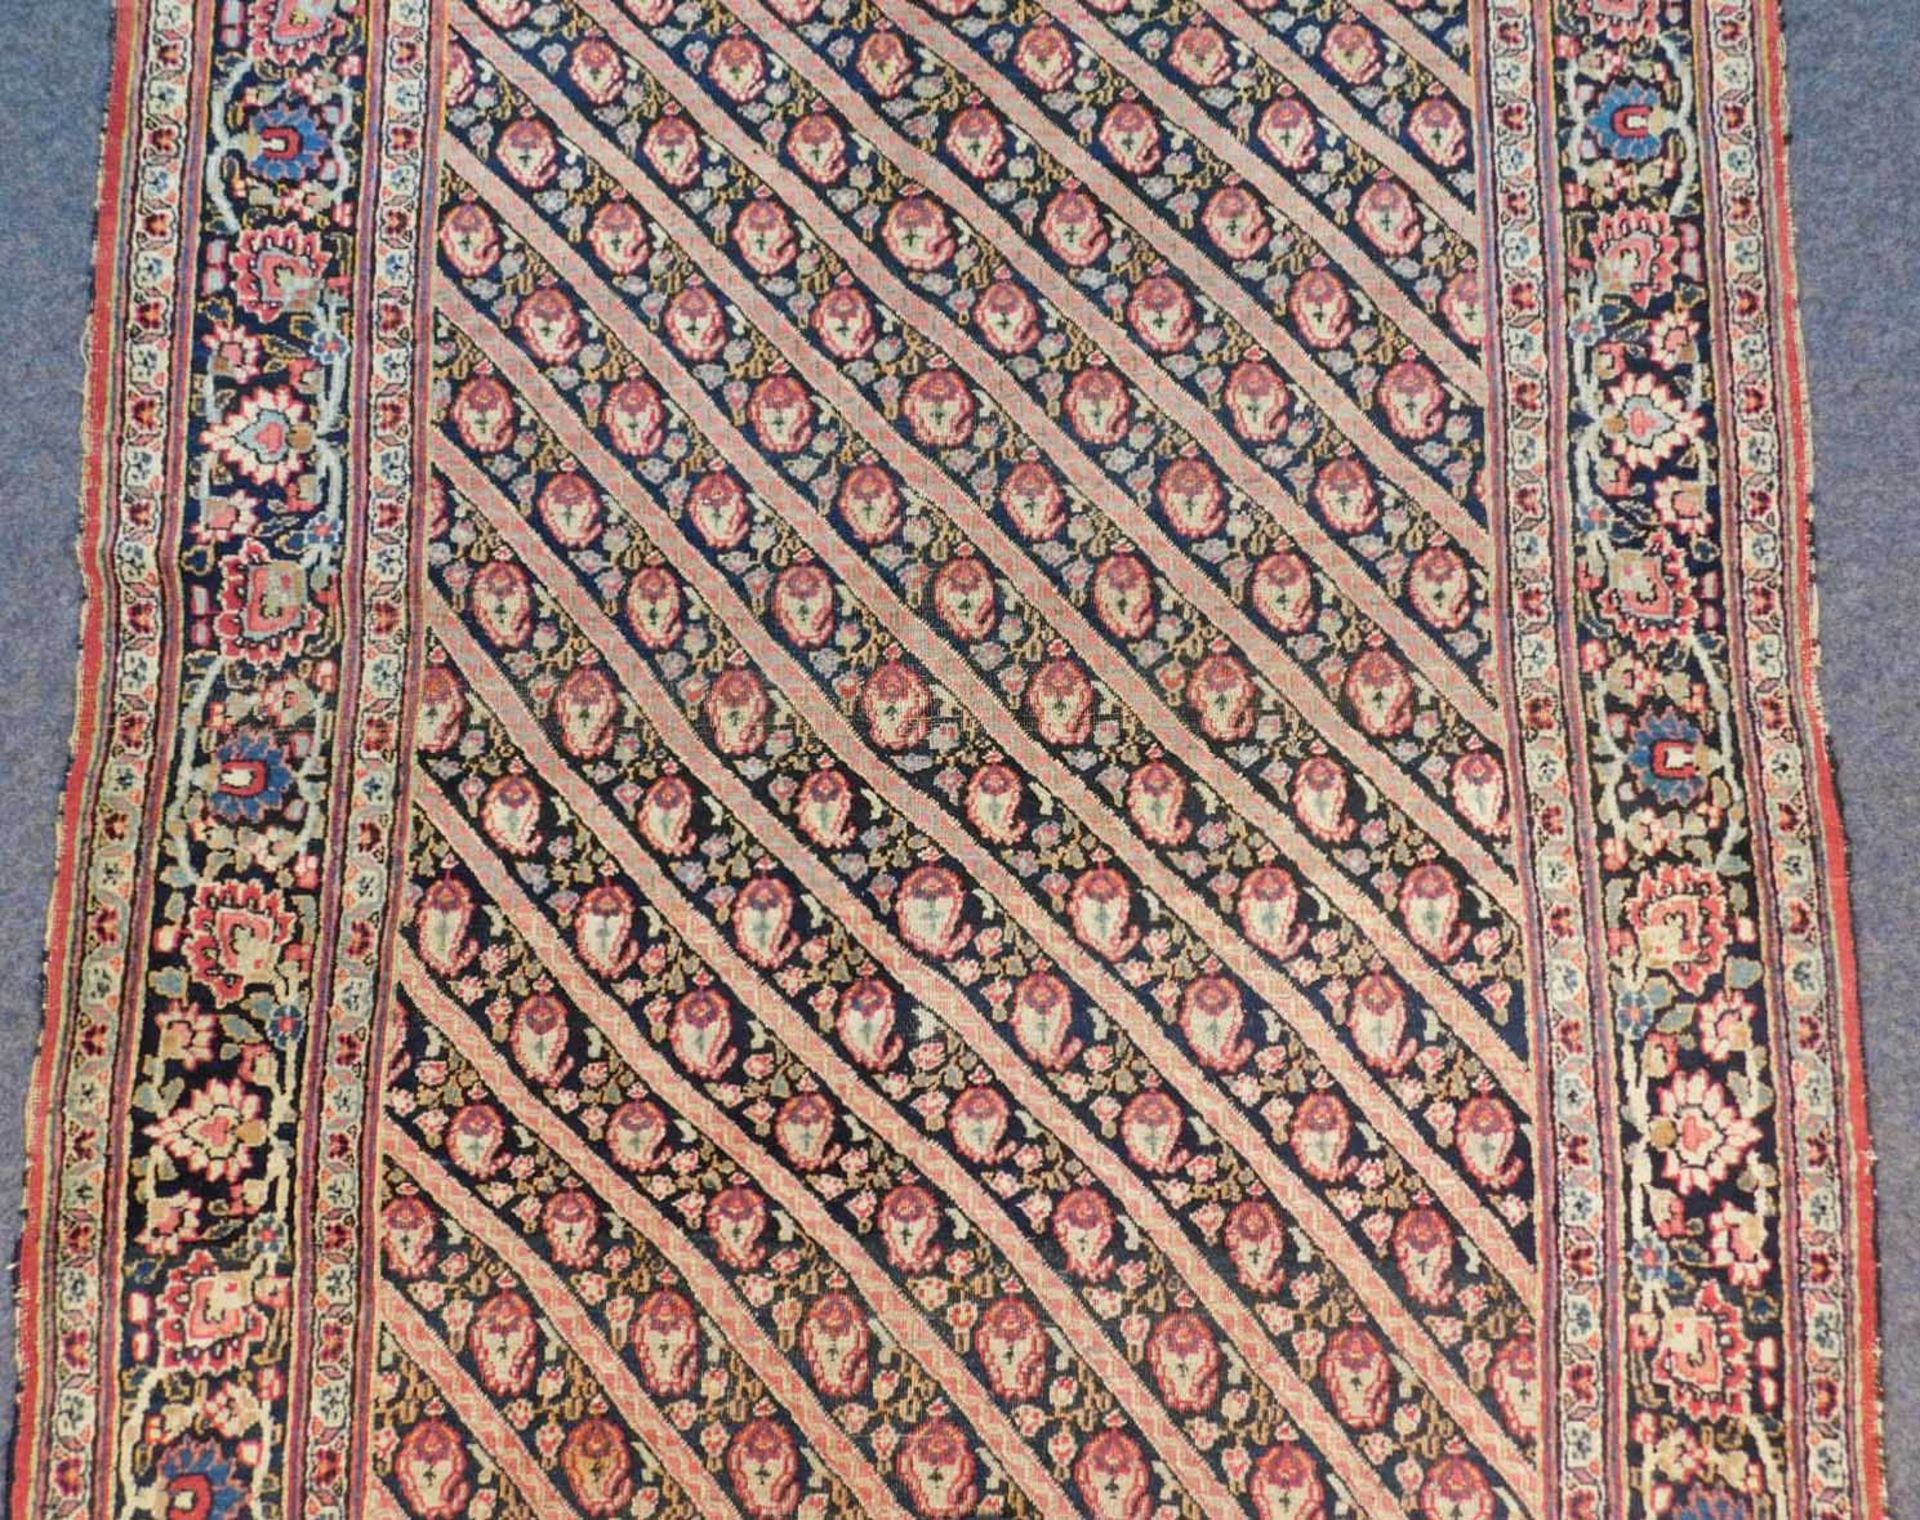 Khorassan Teppich. Antik. - Bild 3 aus 6